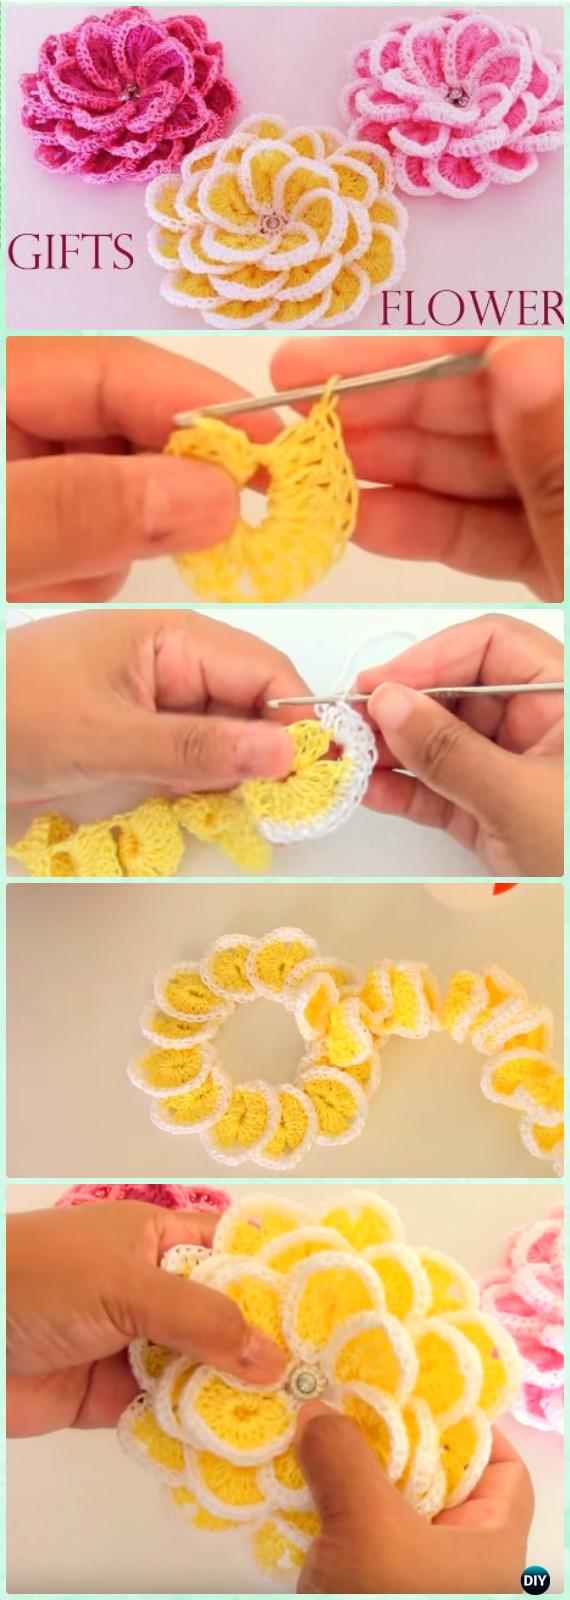 Crochet Single Strip Flower Free Pattern [Video] - Crochet 3D Flower Motif Free Patterns